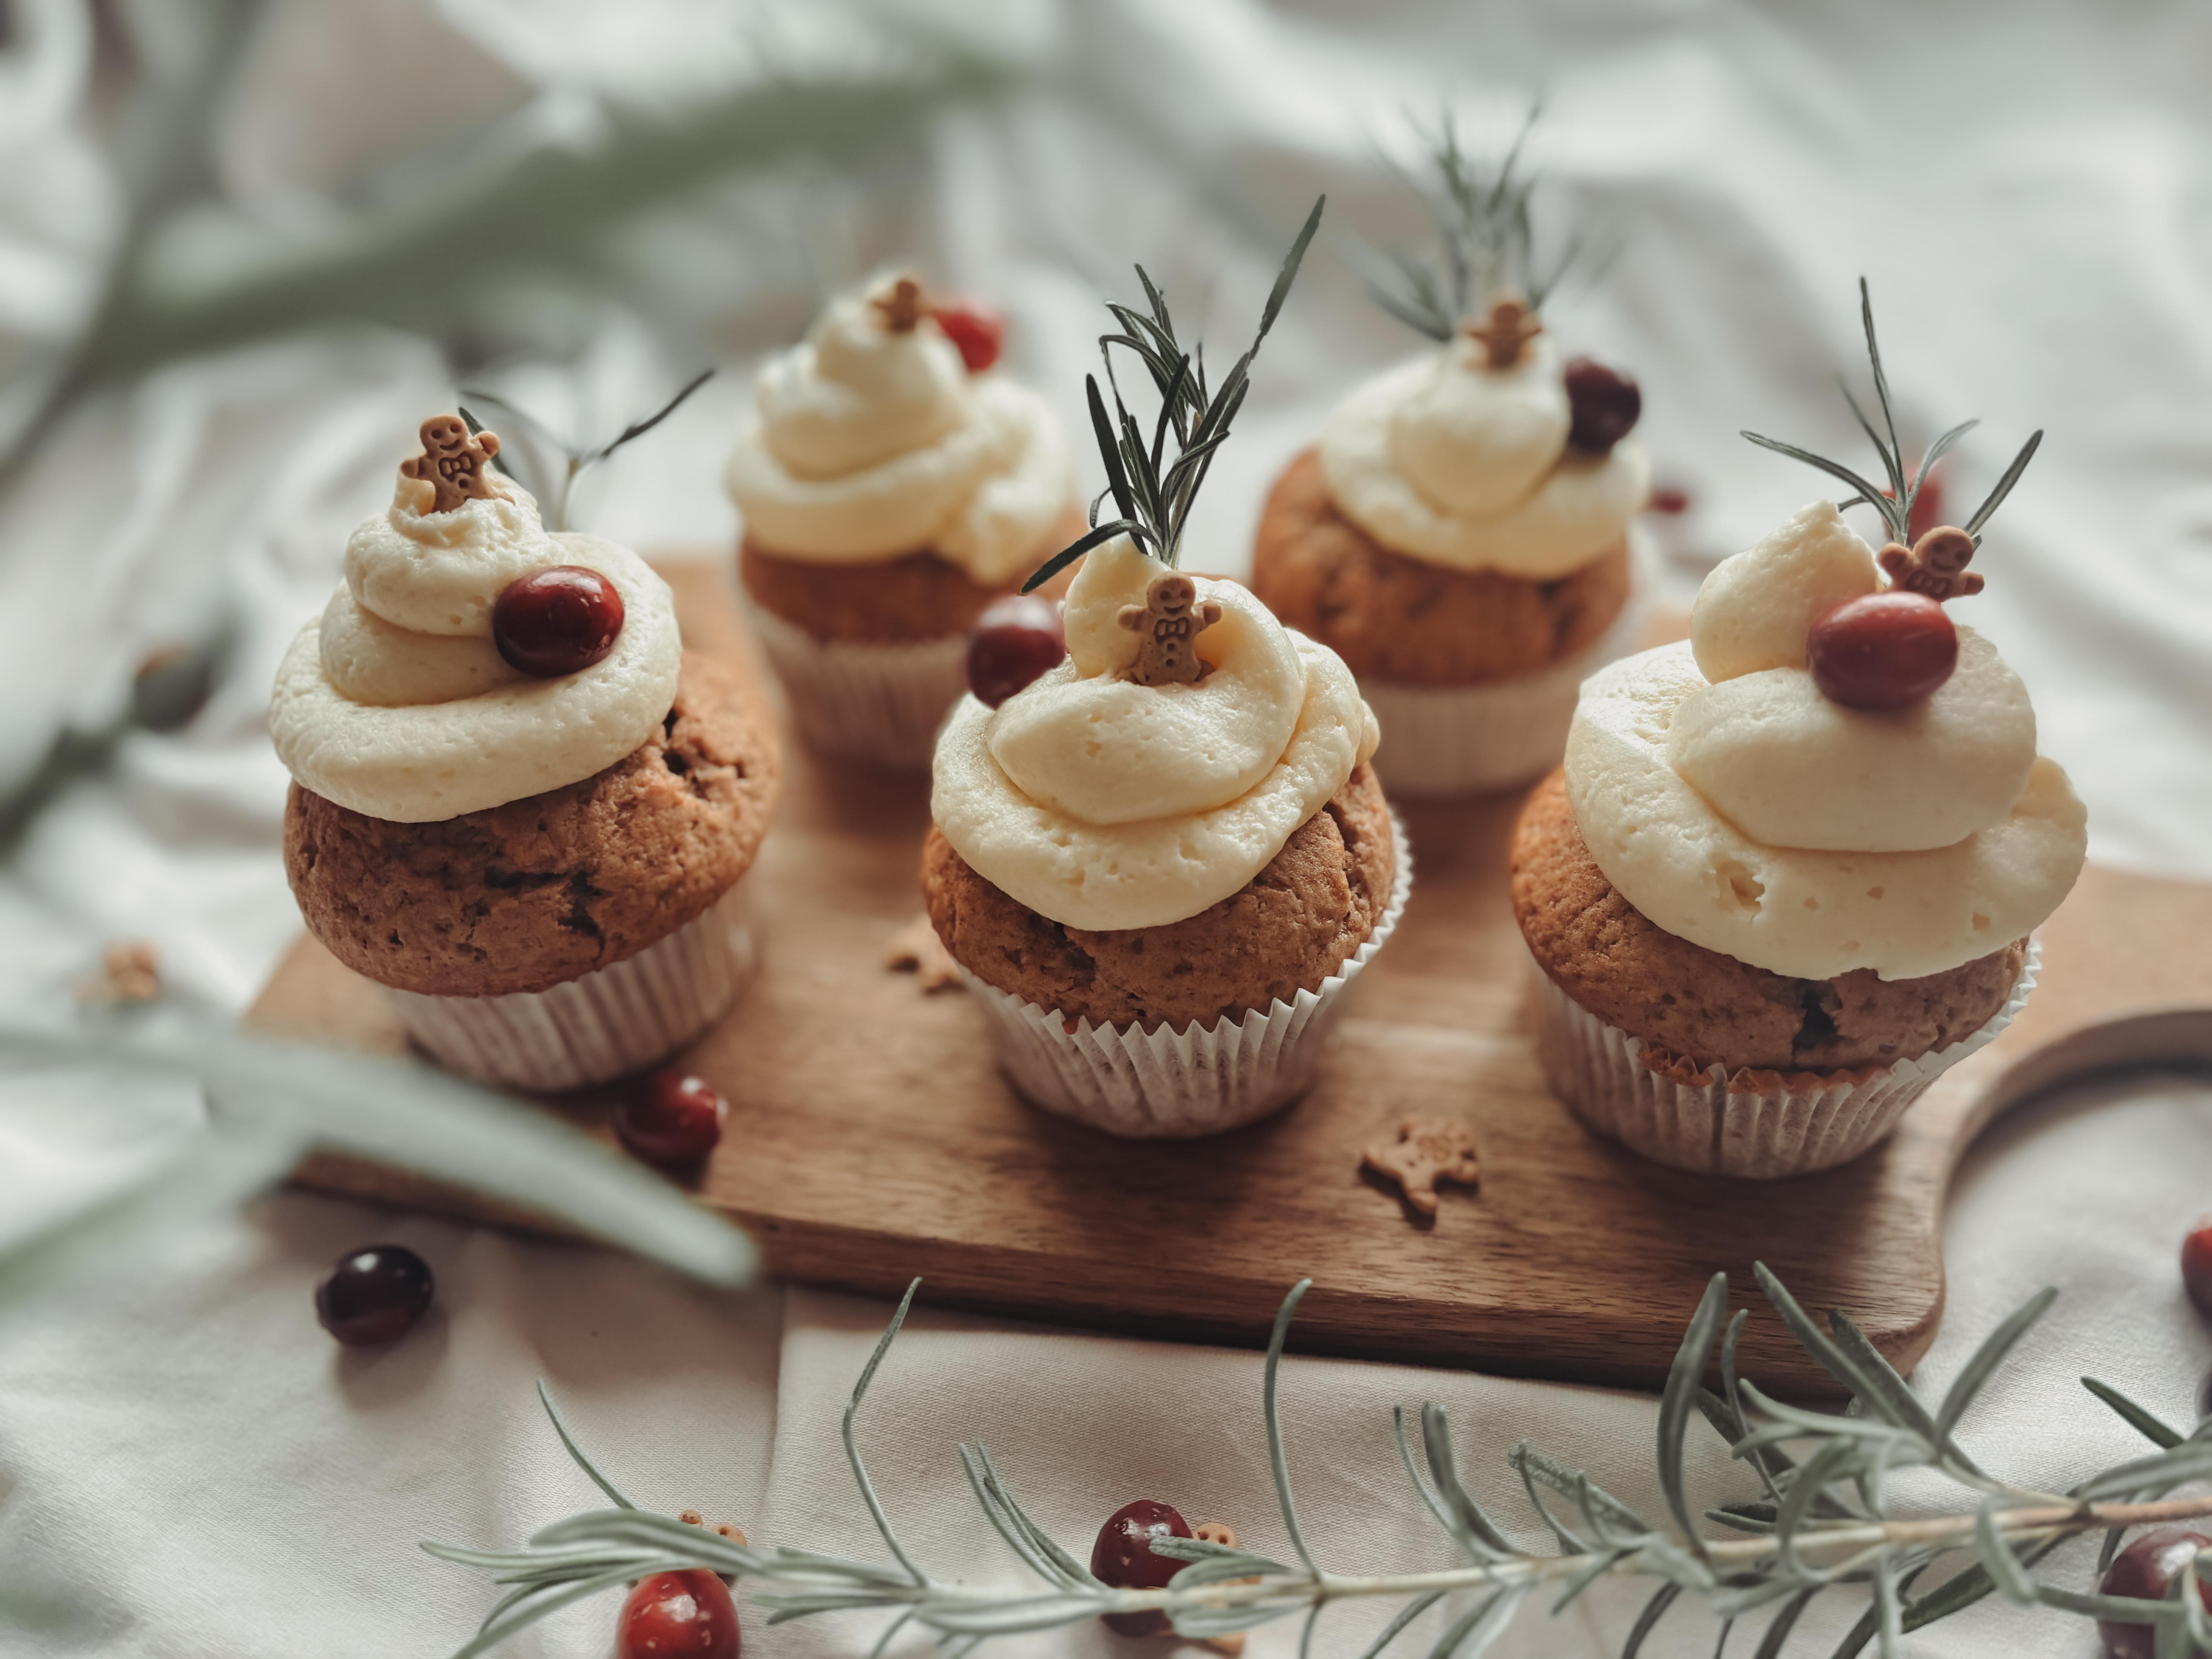 ♡ Einen gesegneten 2. Advent ♡
#advent #backen #muffins #weihnachtsbäckerei #küche #couchliebt